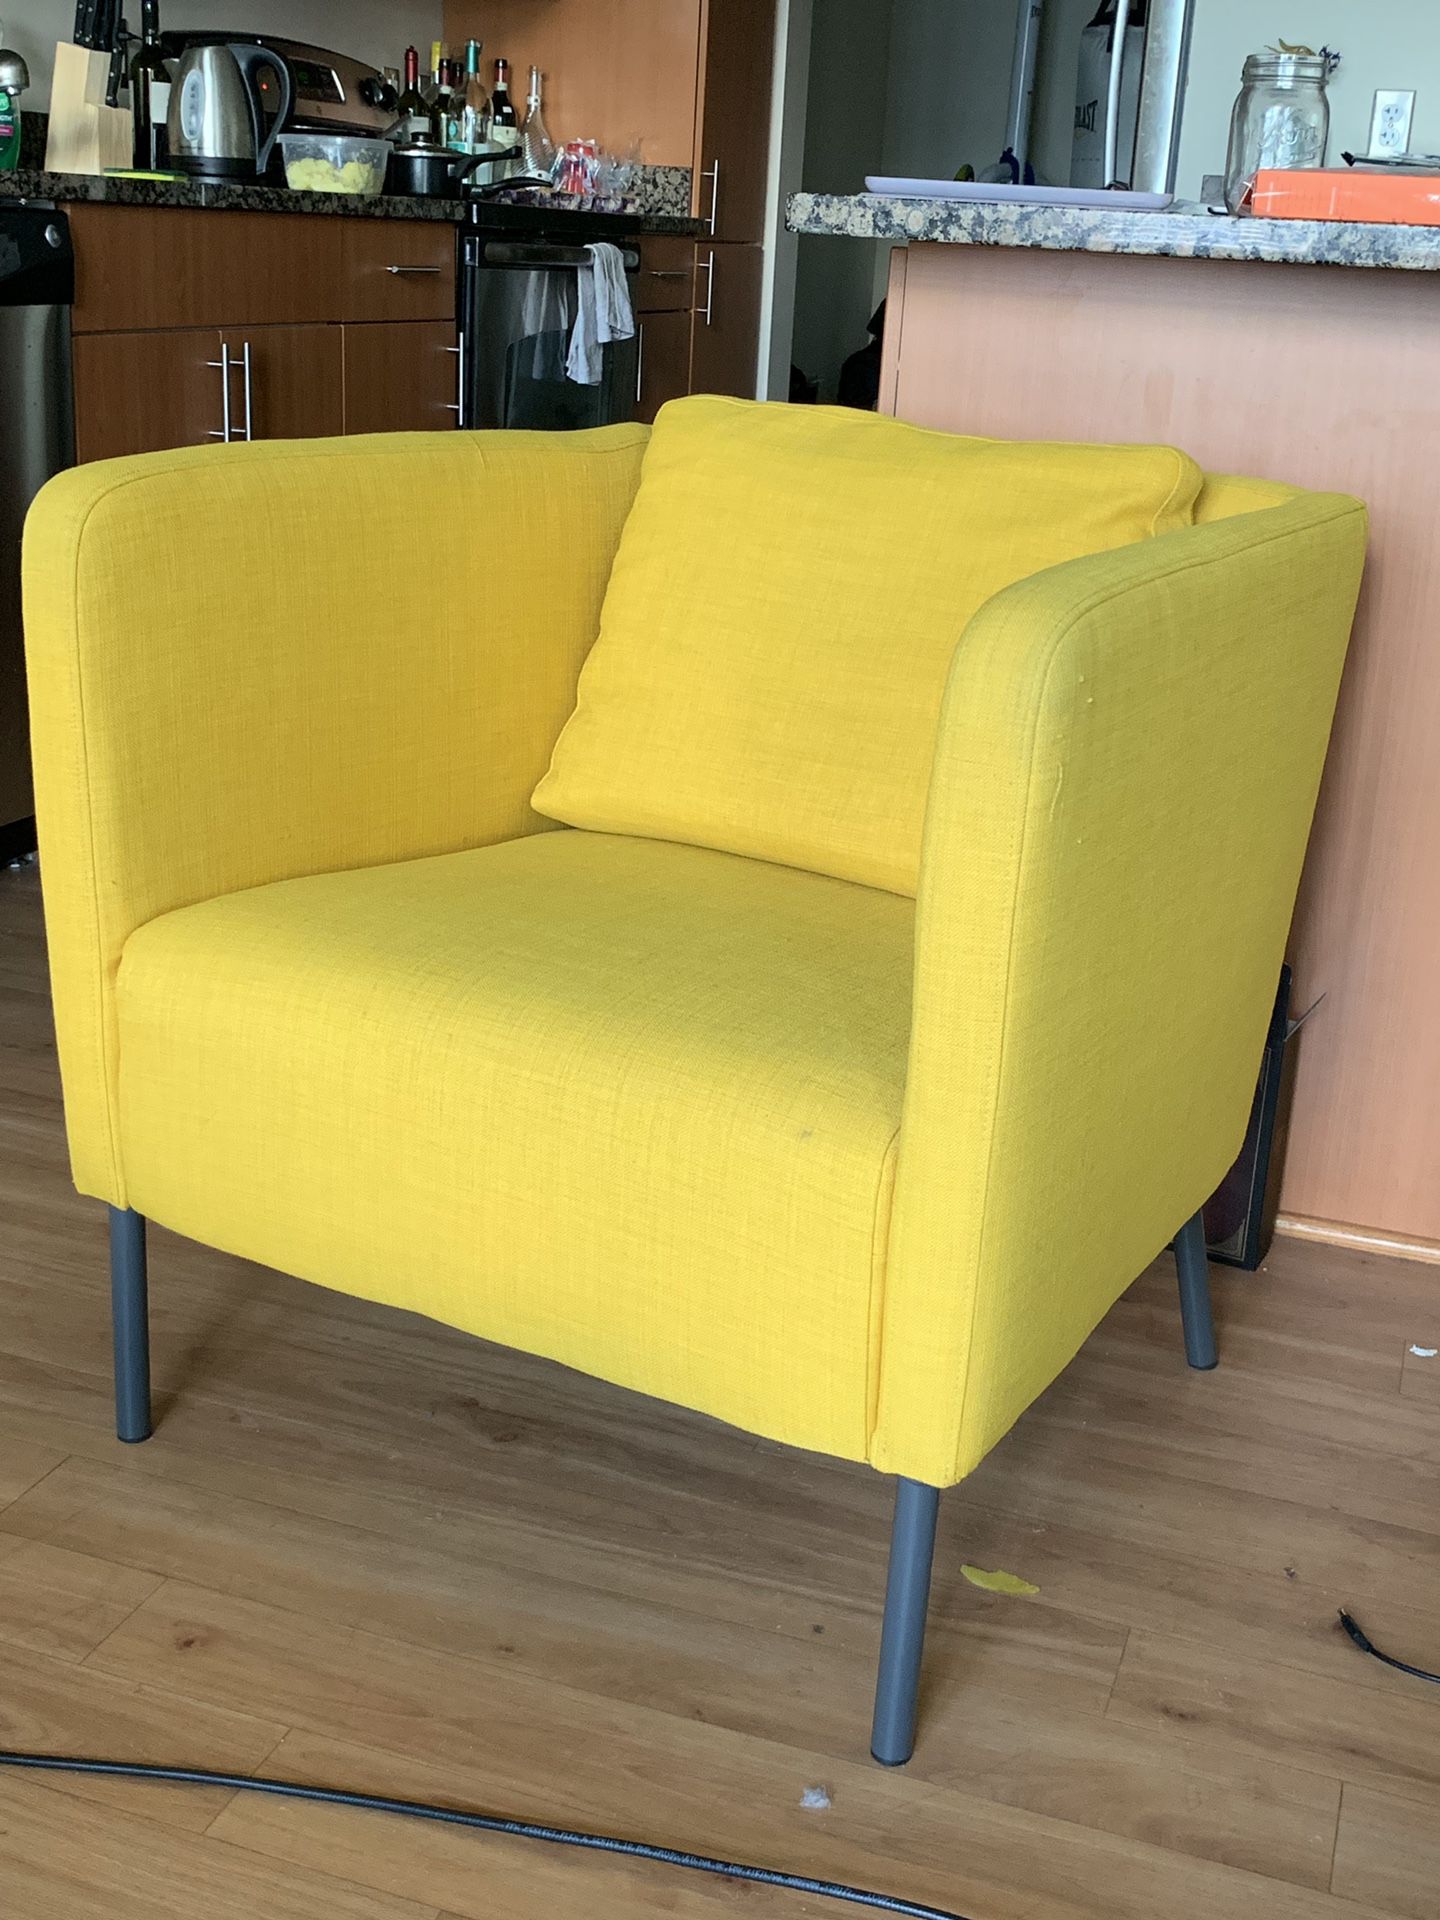 IKEA comfy armchair